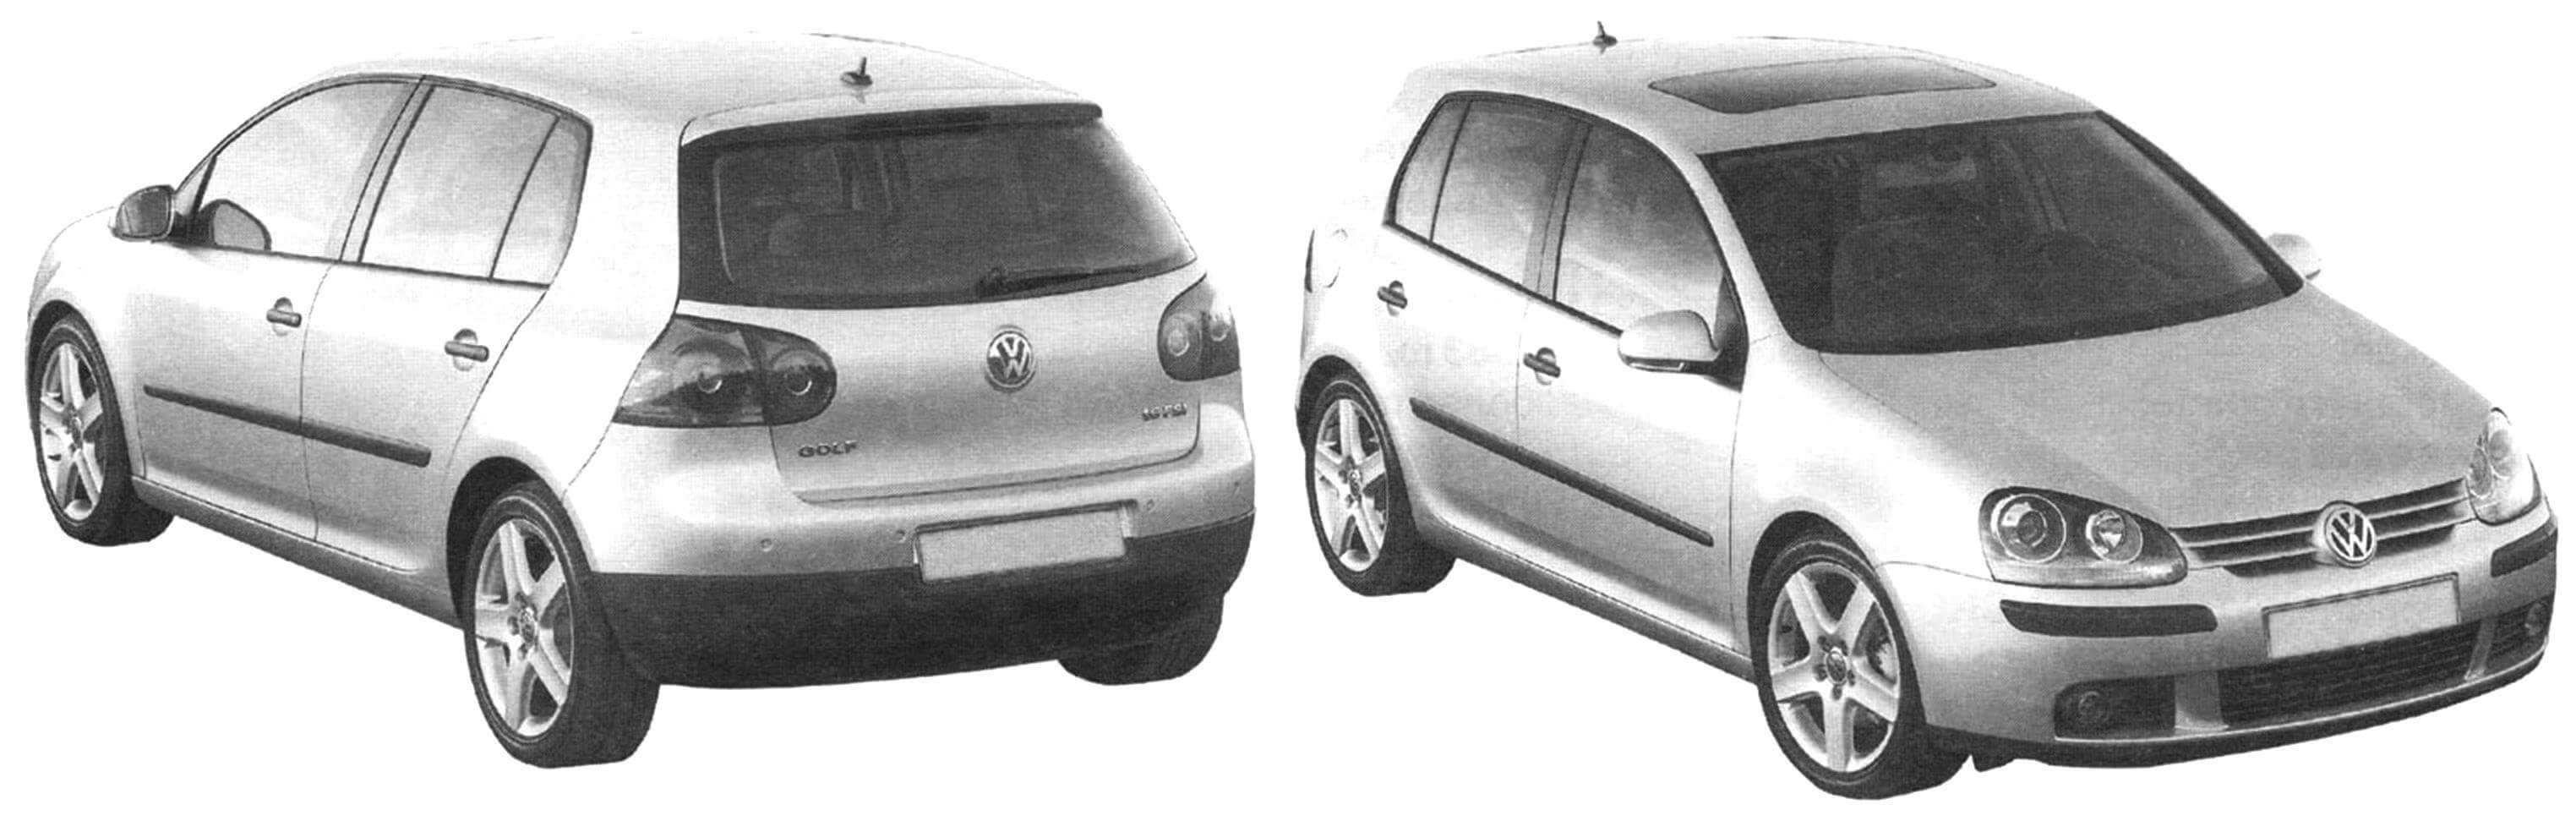 Представитель пятого поколения автомобилей - переднеприводной пятидверный хэтчбек VW Golf выпуска 2003 года